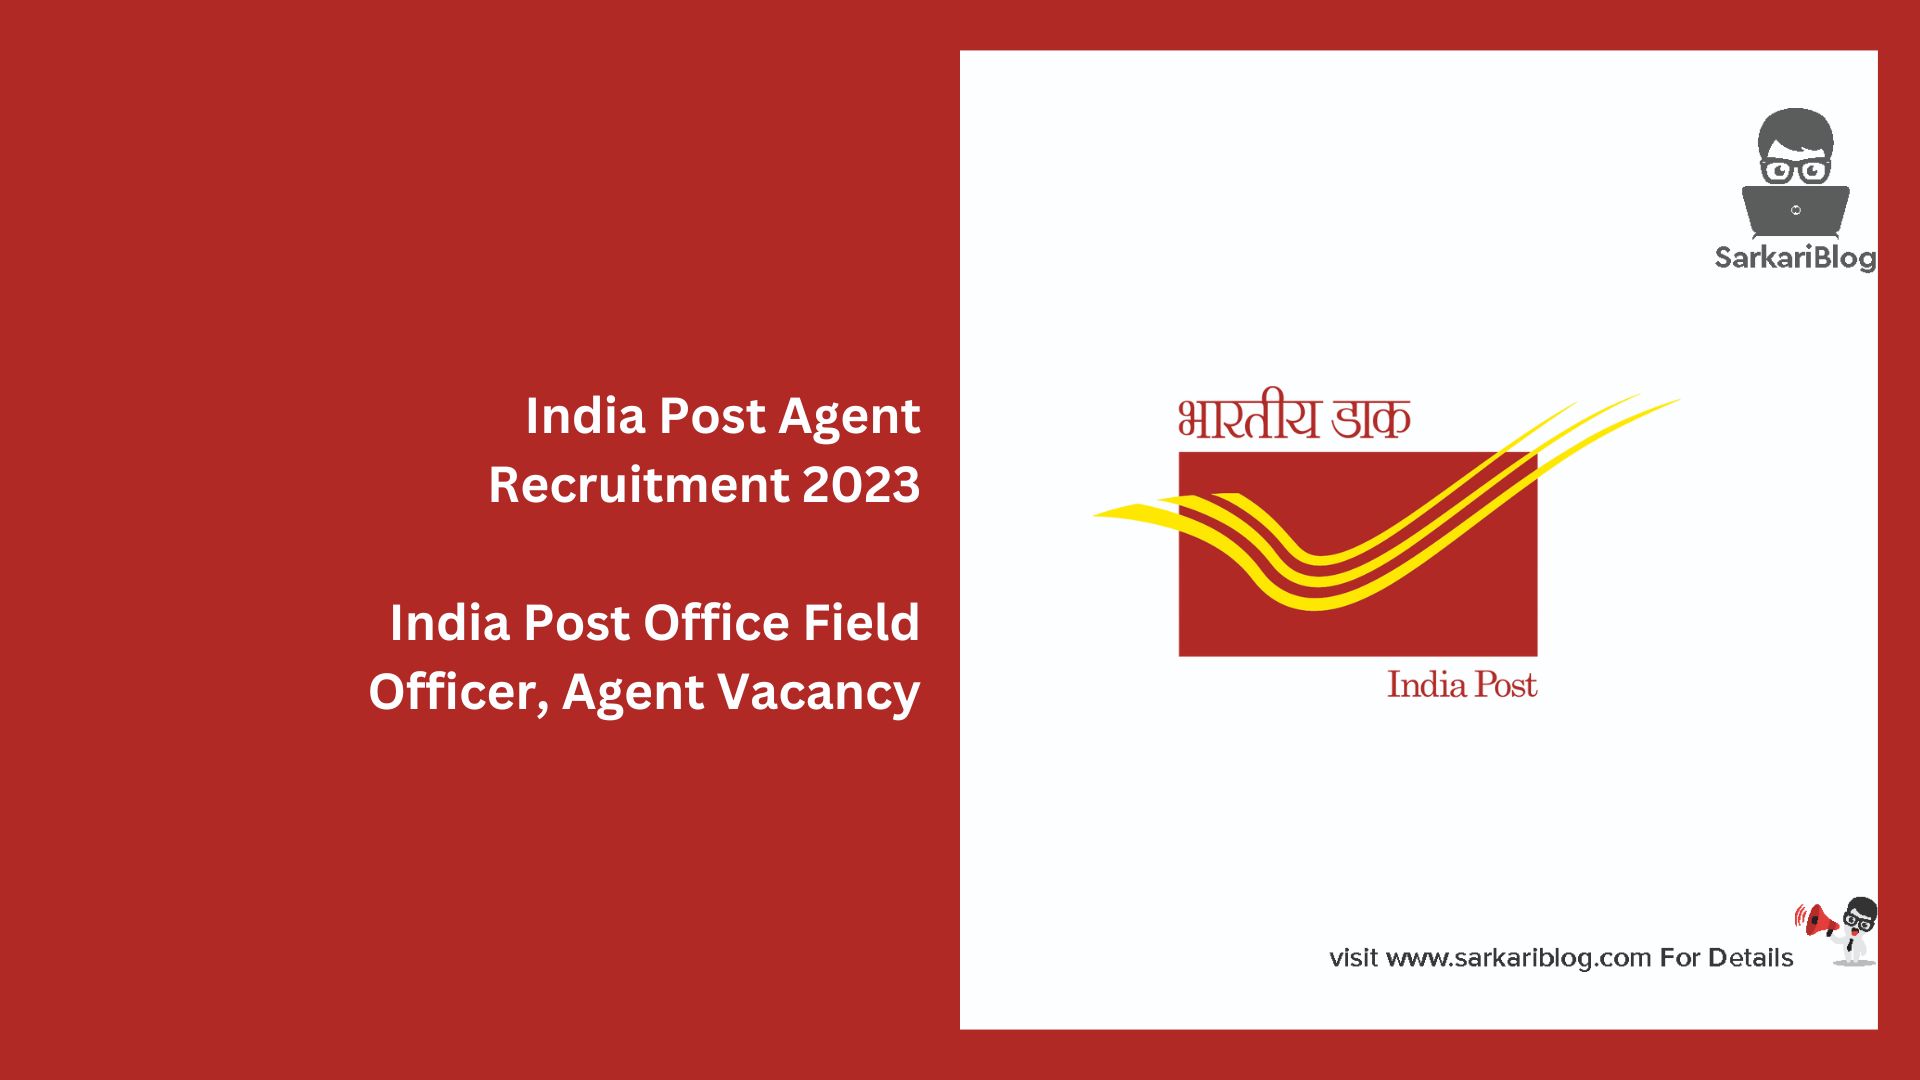 India Post Agent Recruitment 2023